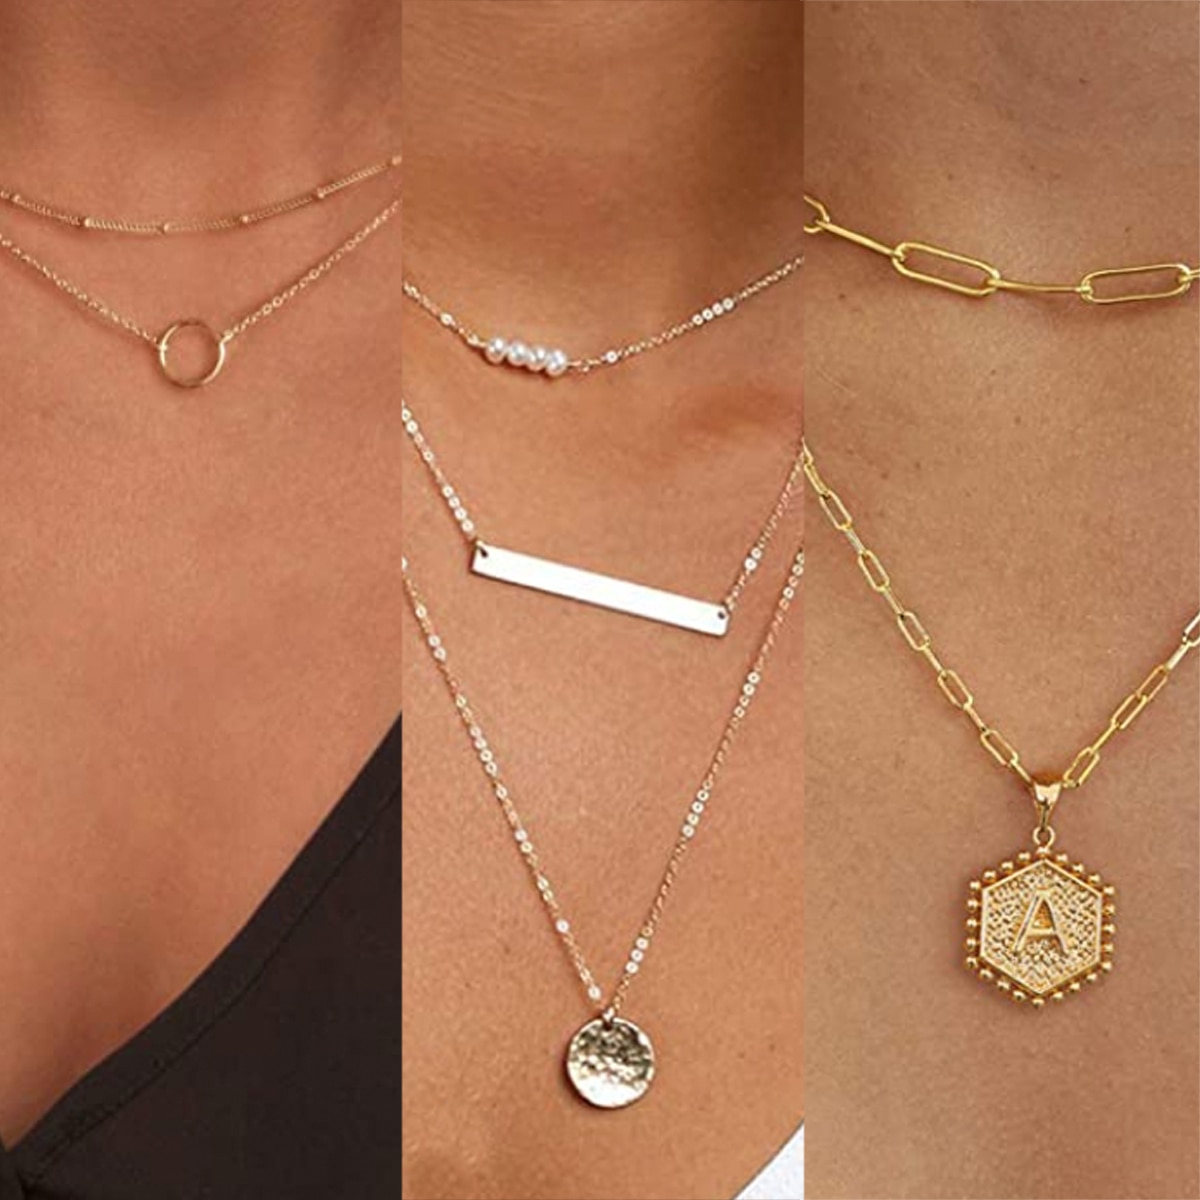 Women Necklace Multi-layer Long Chain Pendant Boho Choker Jewelry Fashion Lots 